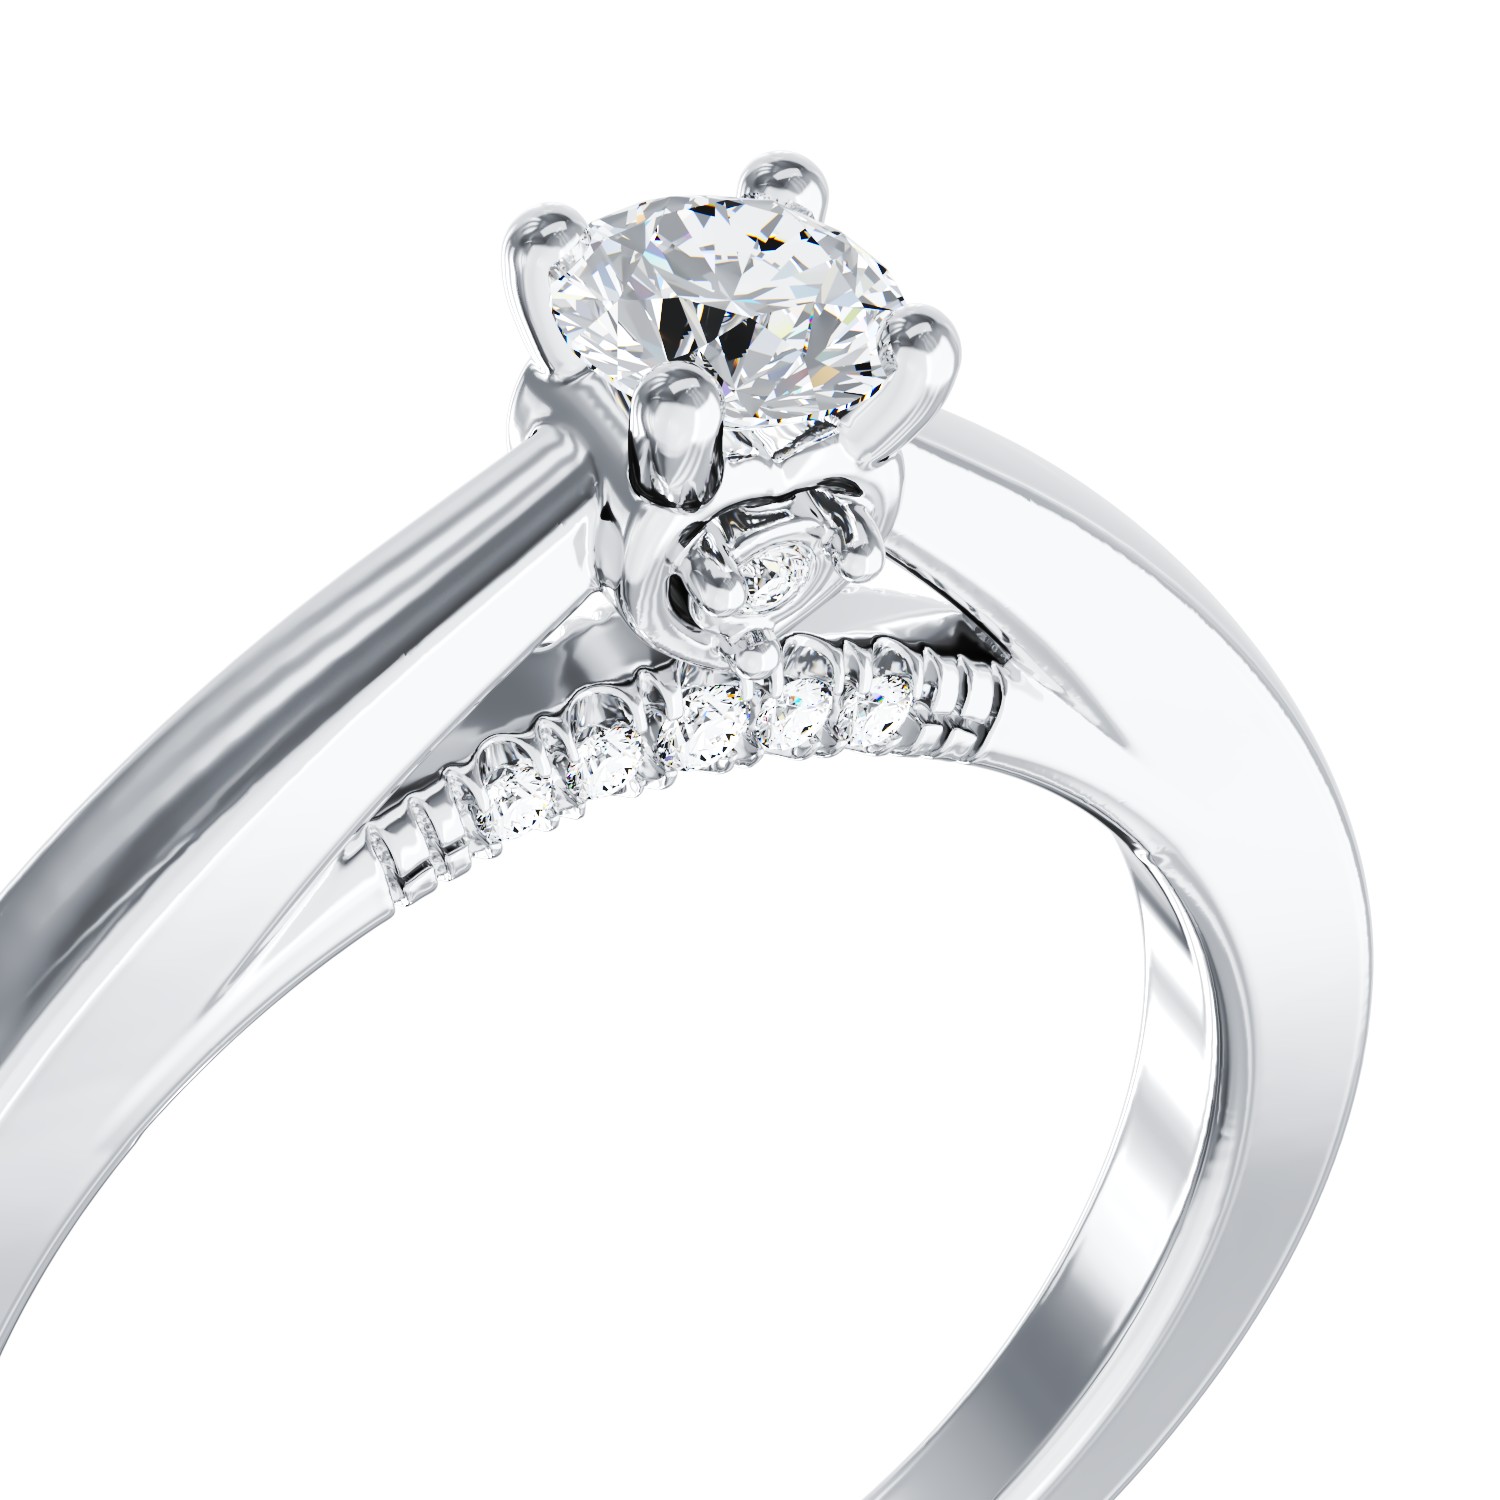 Eljegyzési gyűrű 18K-os fehér aranyból 0,4ct gyémánttal és 0,05ct gyémántokkal. Gramm: 3,15